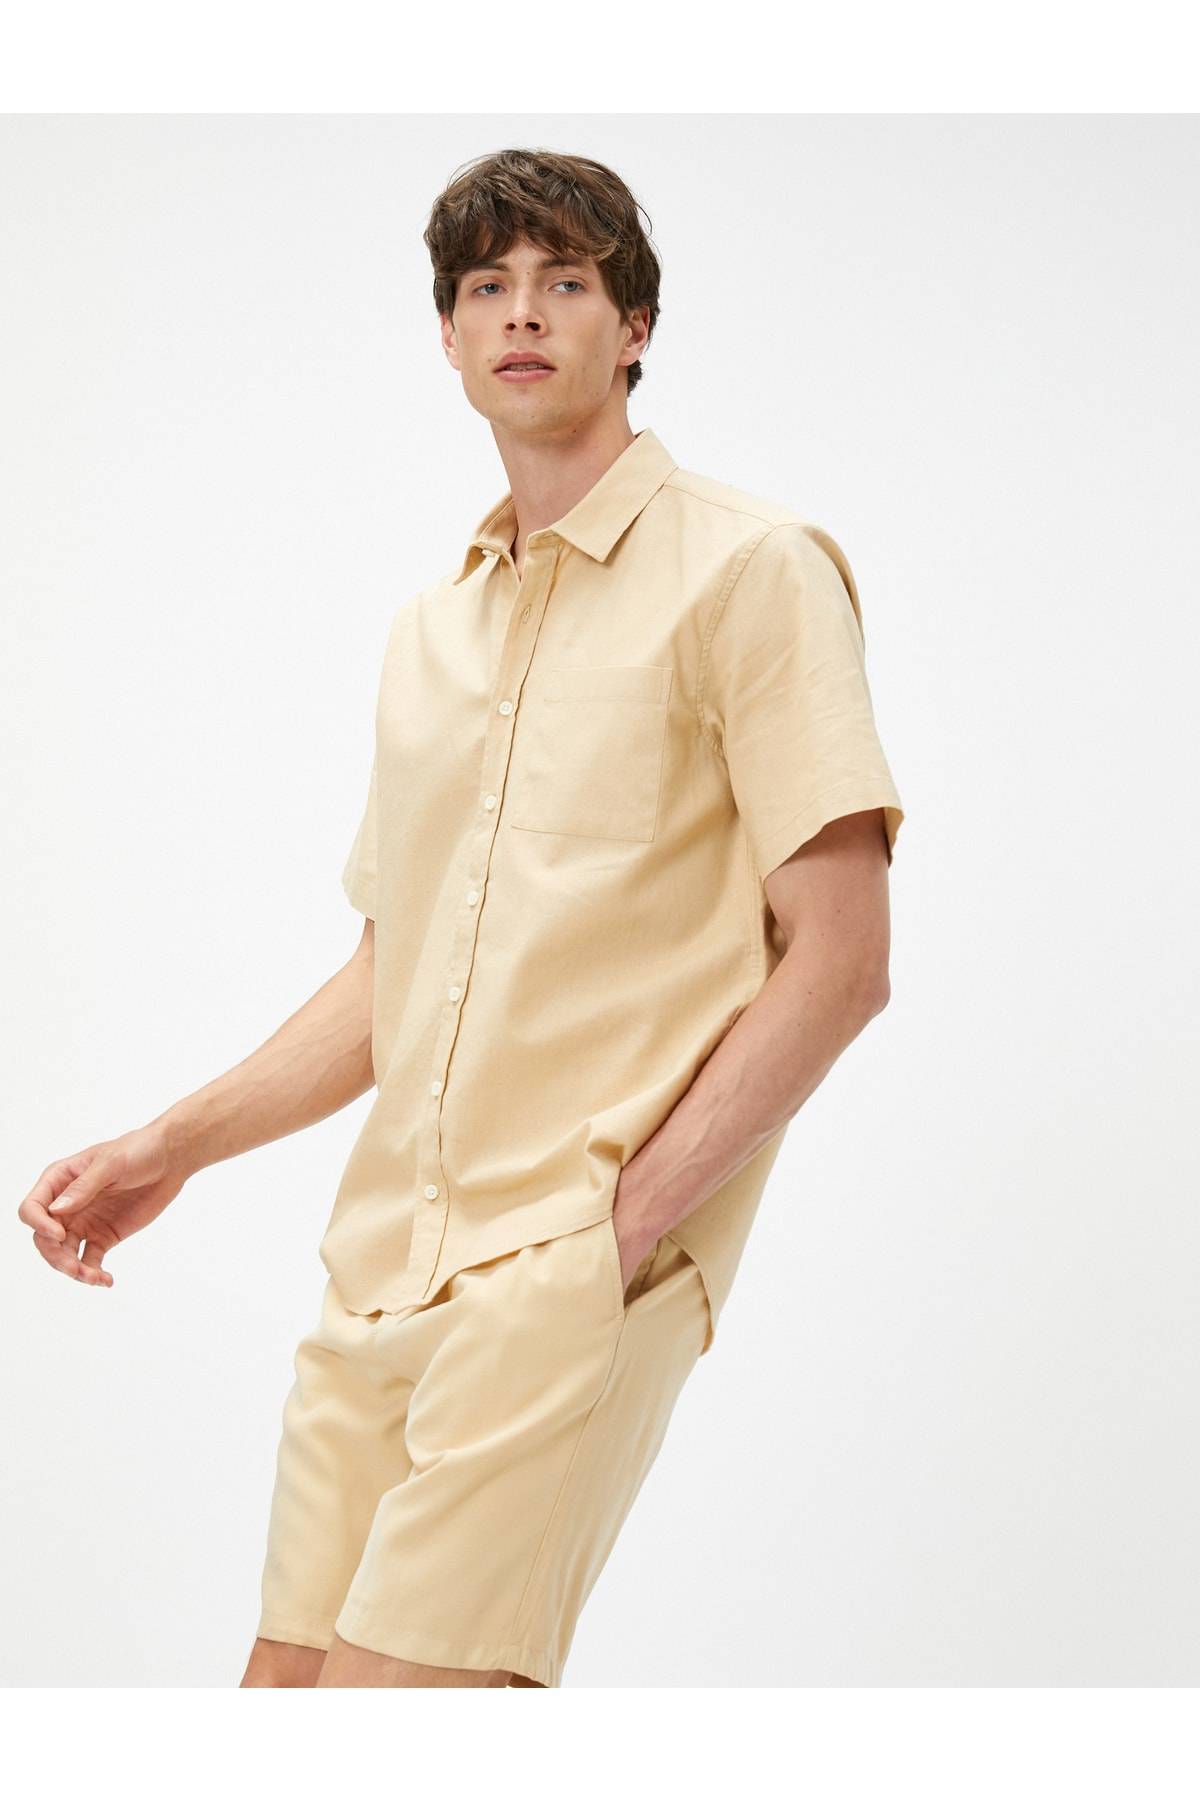 جیب یقه کلاسیک پیراهن آستین کوتاه تابستانی با جزئیات